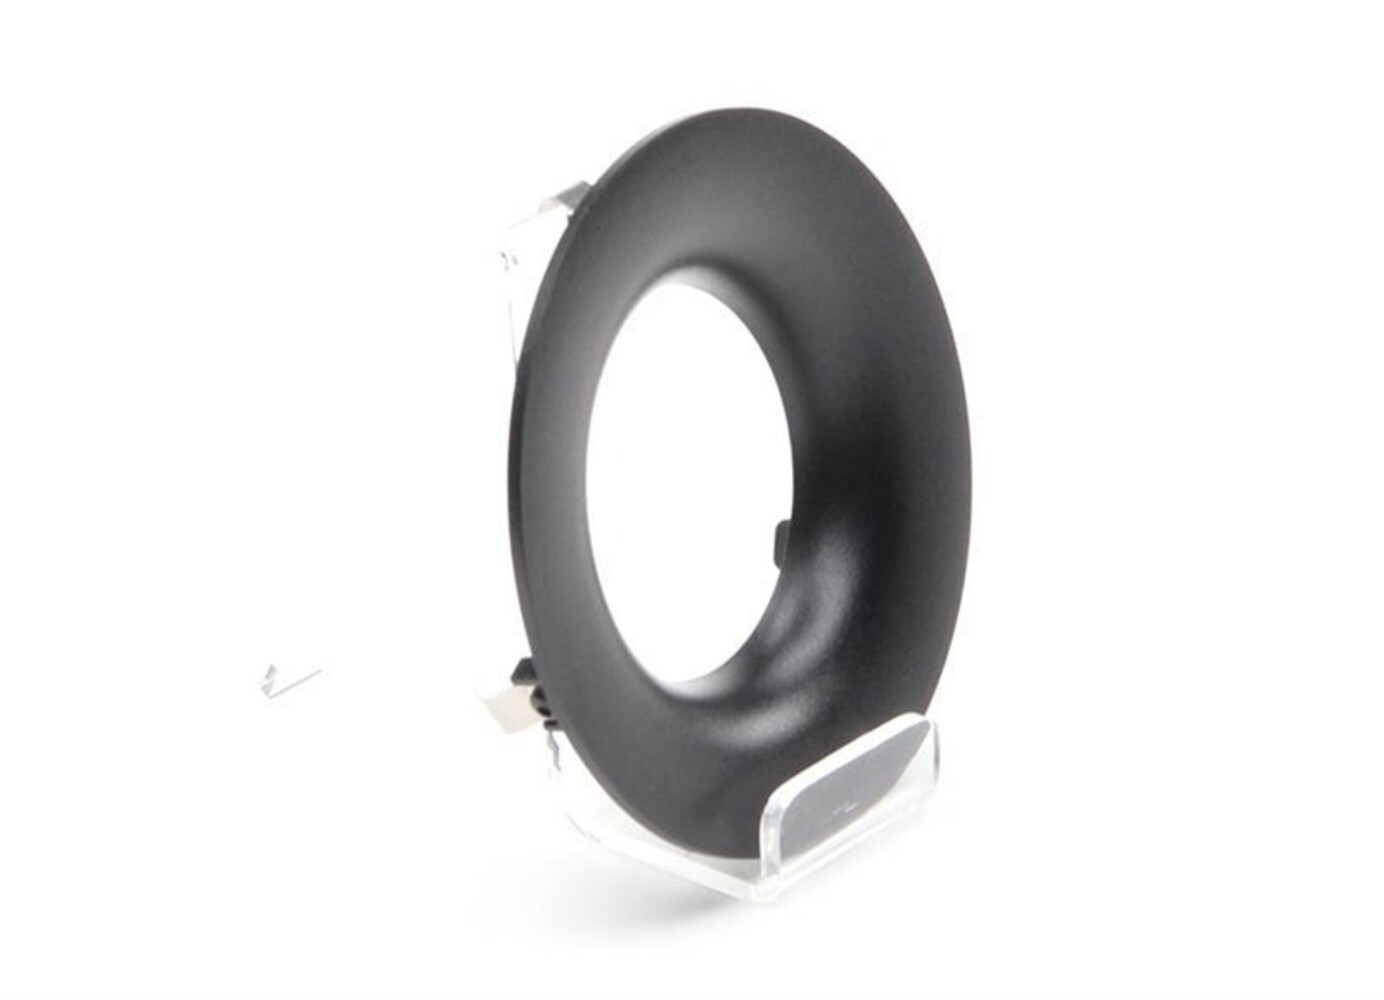 Schwarzer Reflektor Ring von Deko-Light Serie Uni II Max mit einer Höhe von 26 mm als zuverlässiges Zubehör